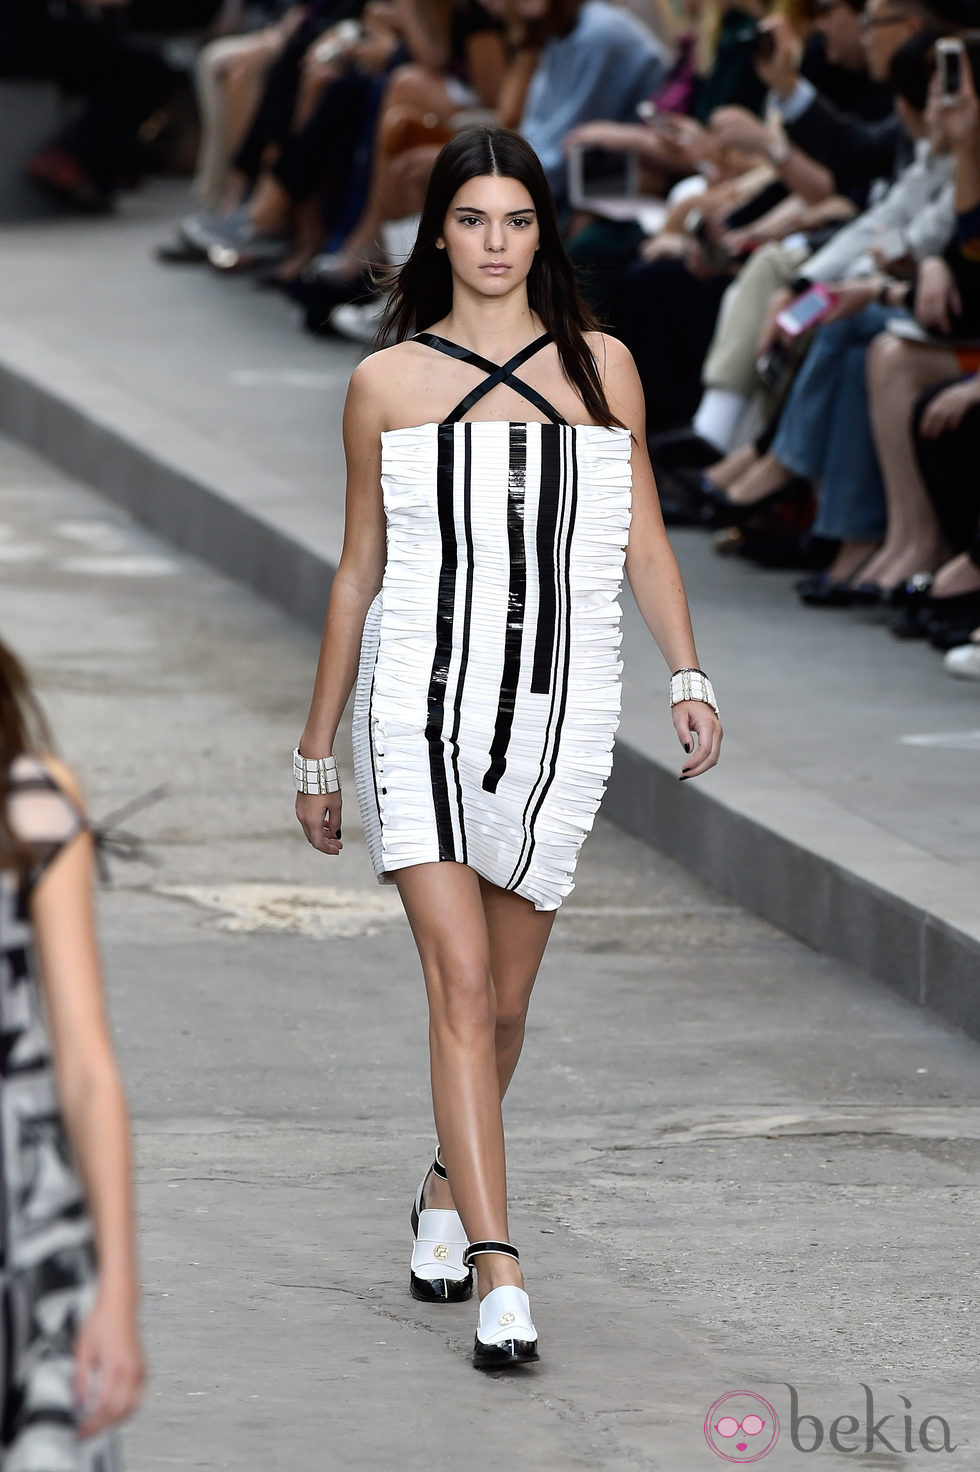 Kendall Jenner desfilando para Chanel en la Semana de la Moda de París primavera/verano 2015